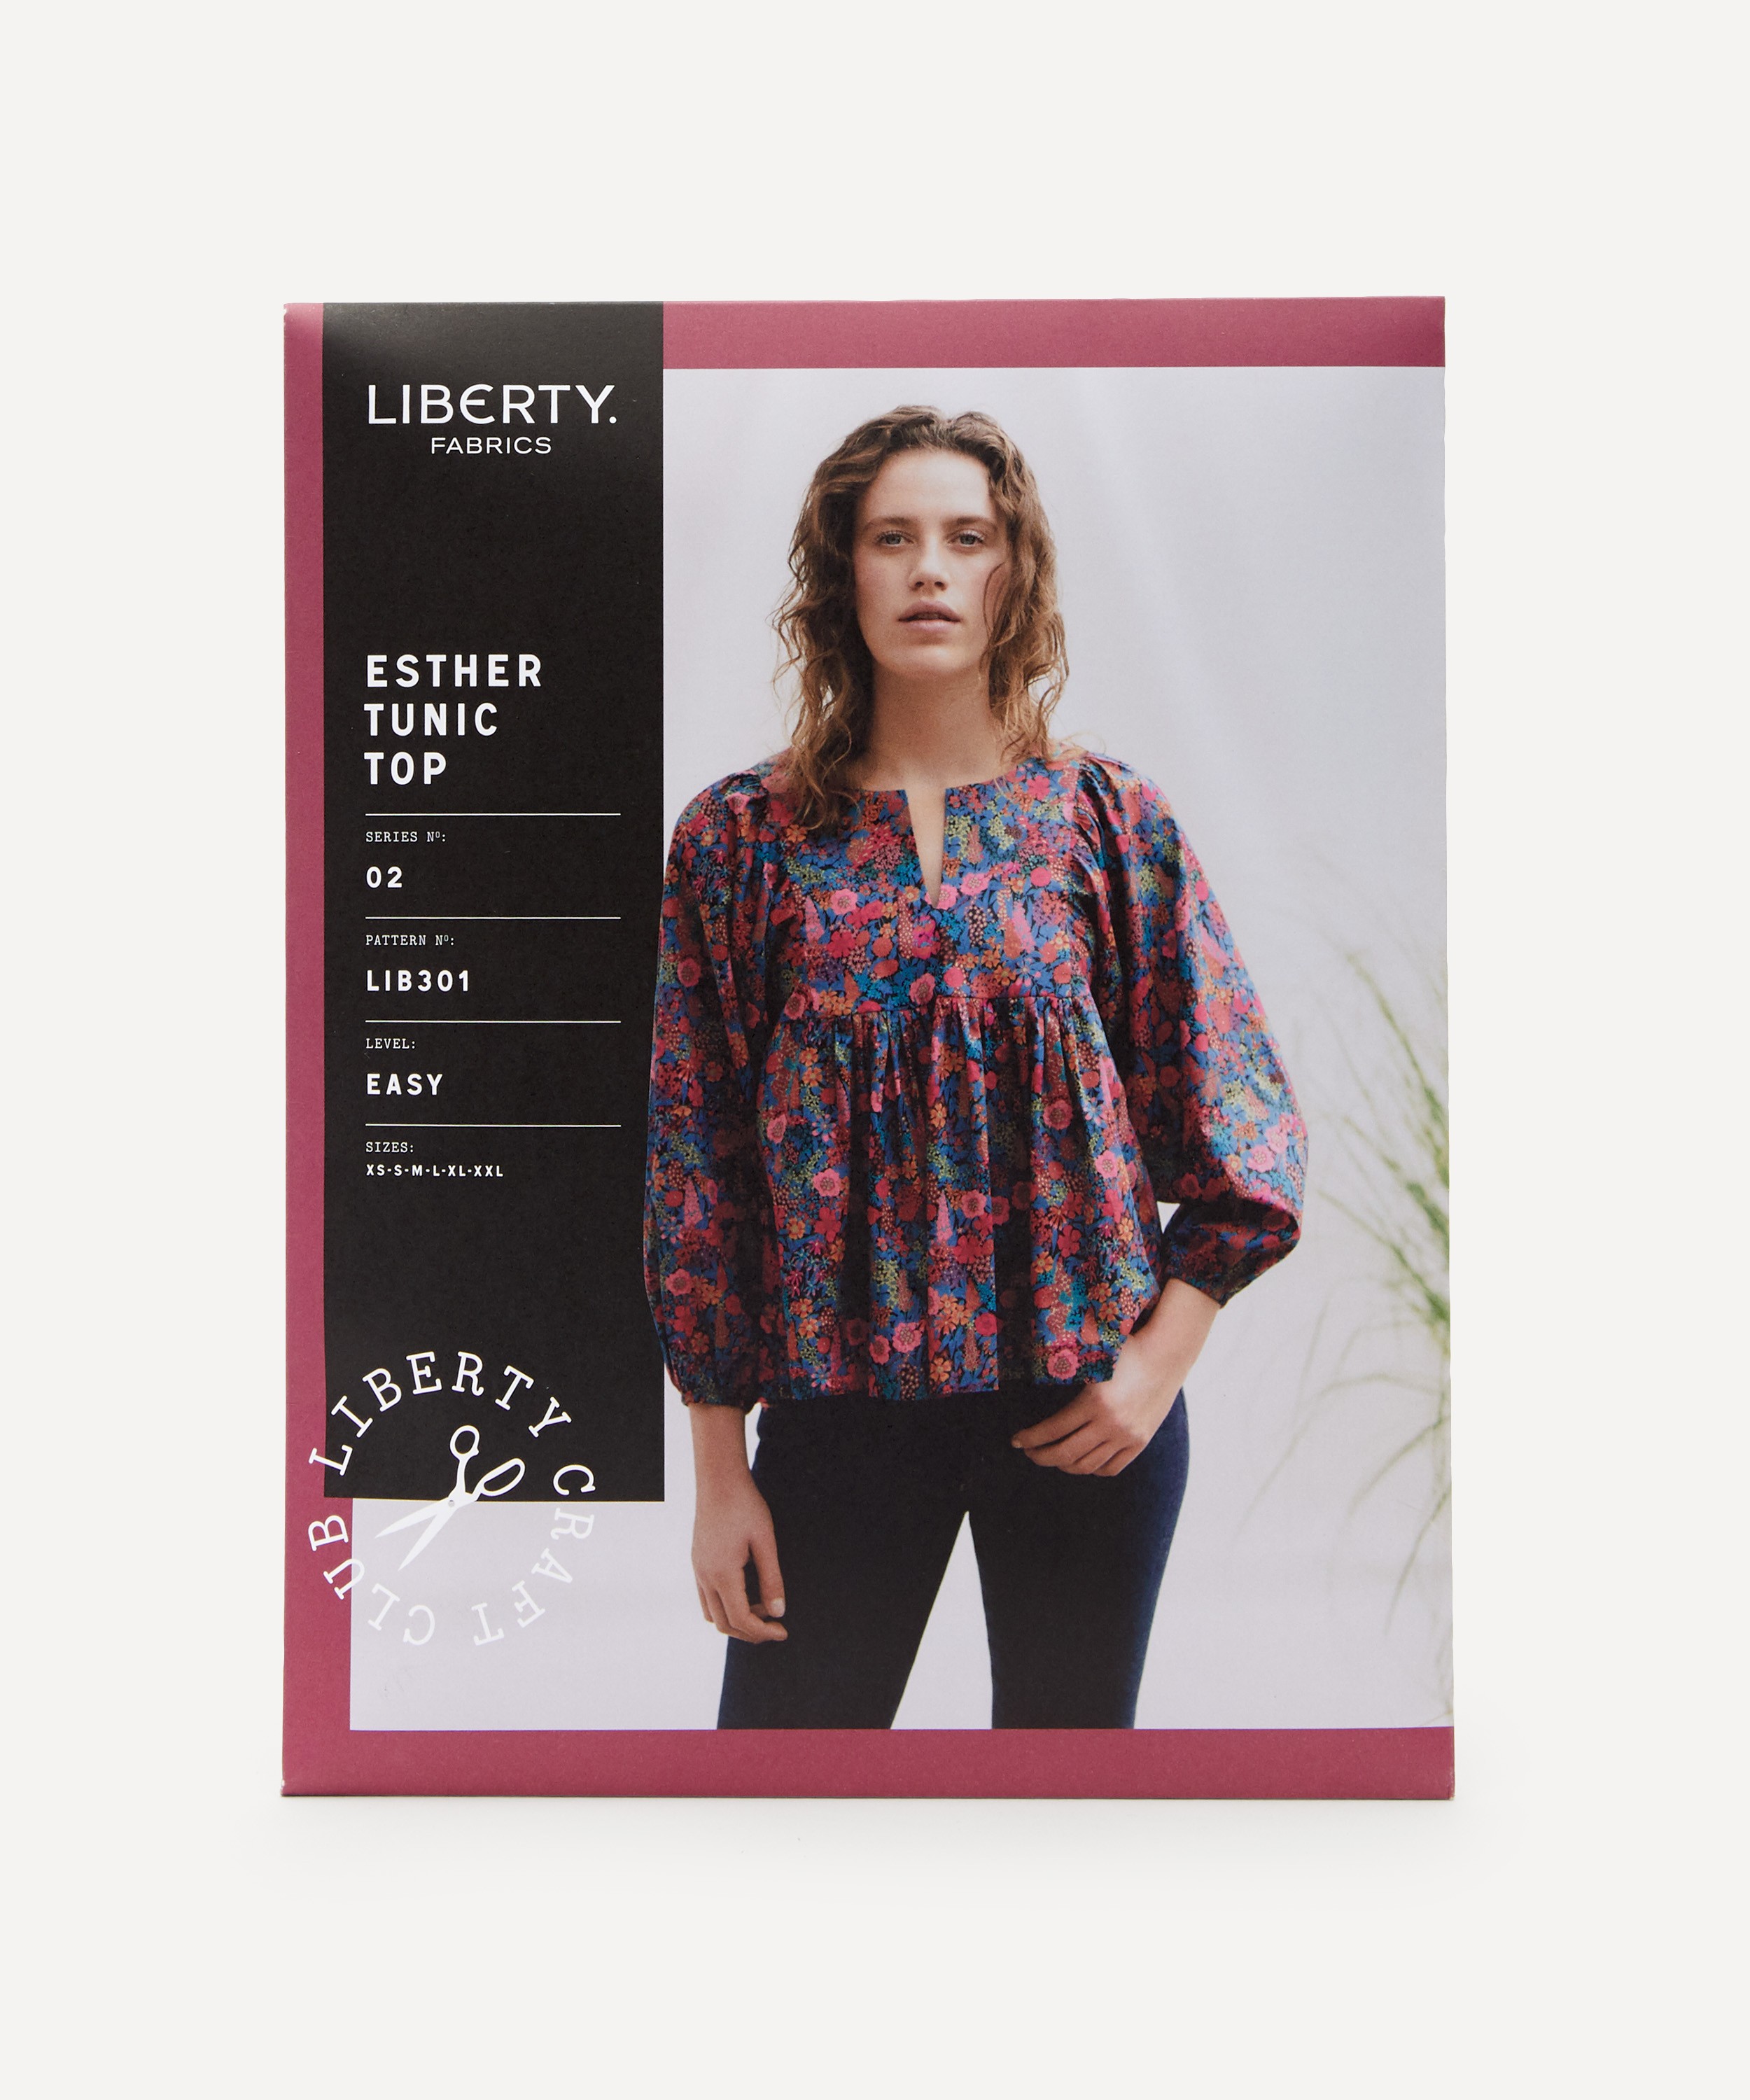 Liberty Fabrics Esther Tunic Top Sewing Pattern Size XS-XXL